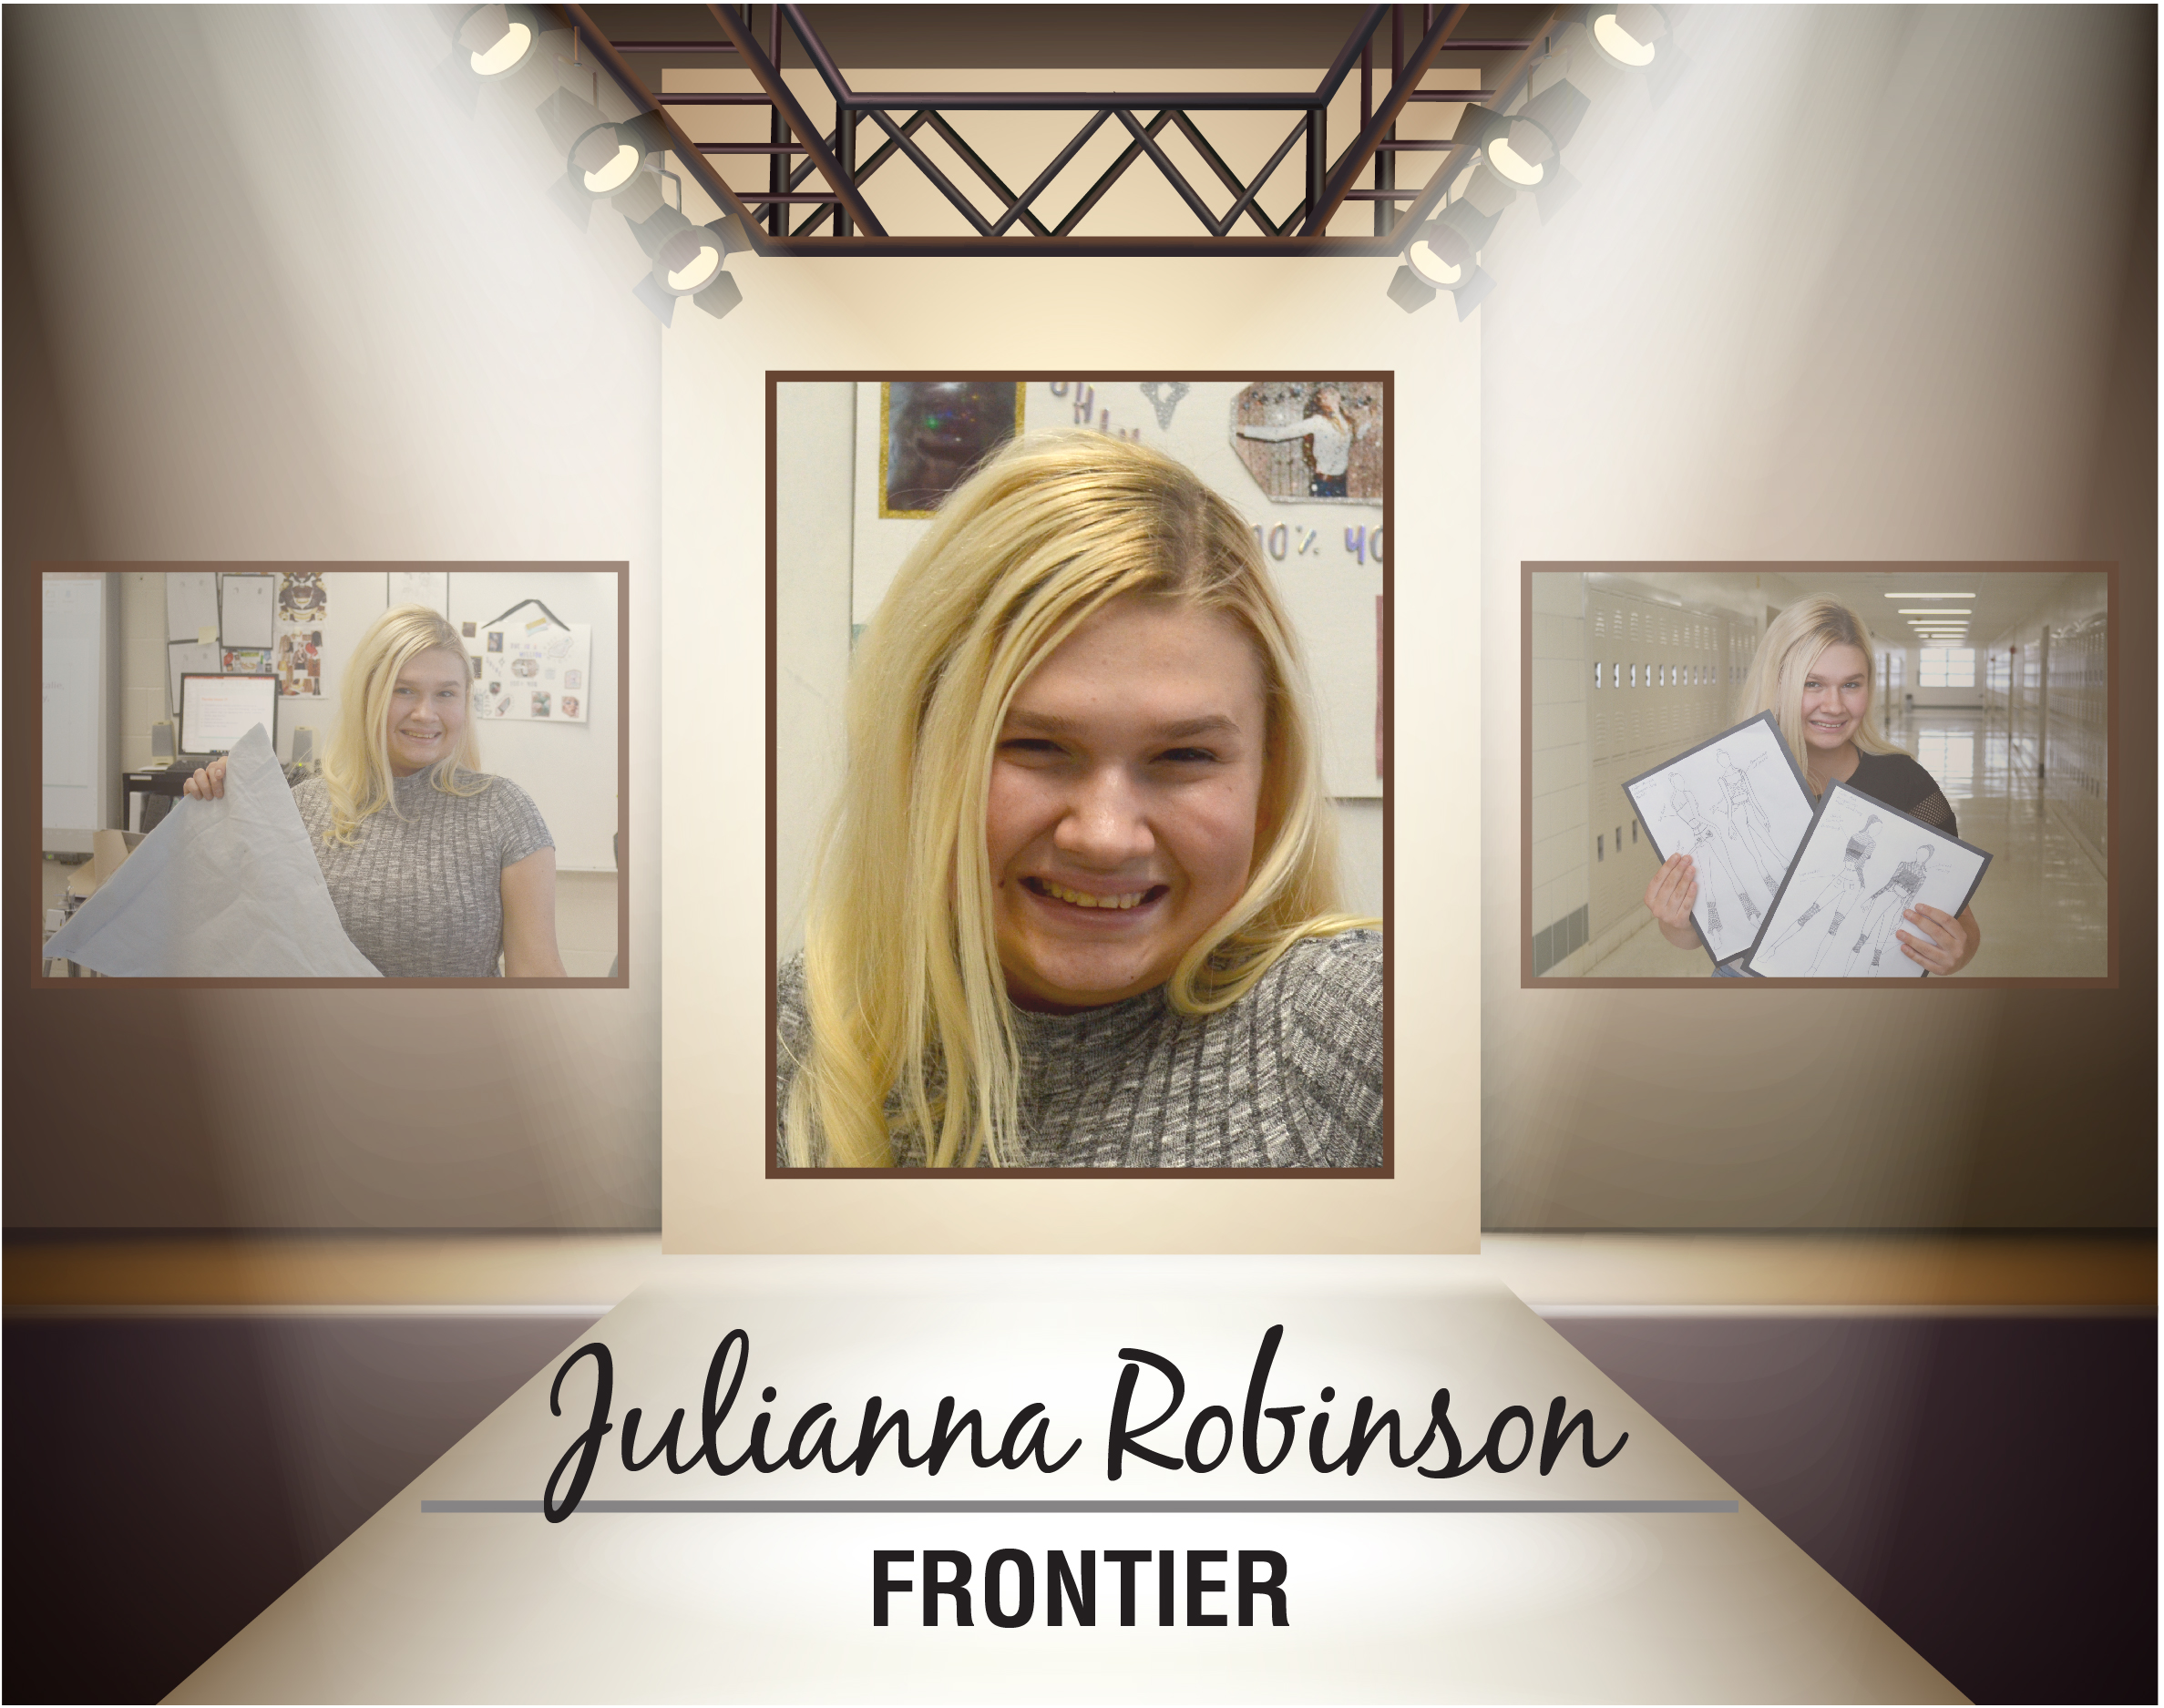 Julianna Robinson, Frontier